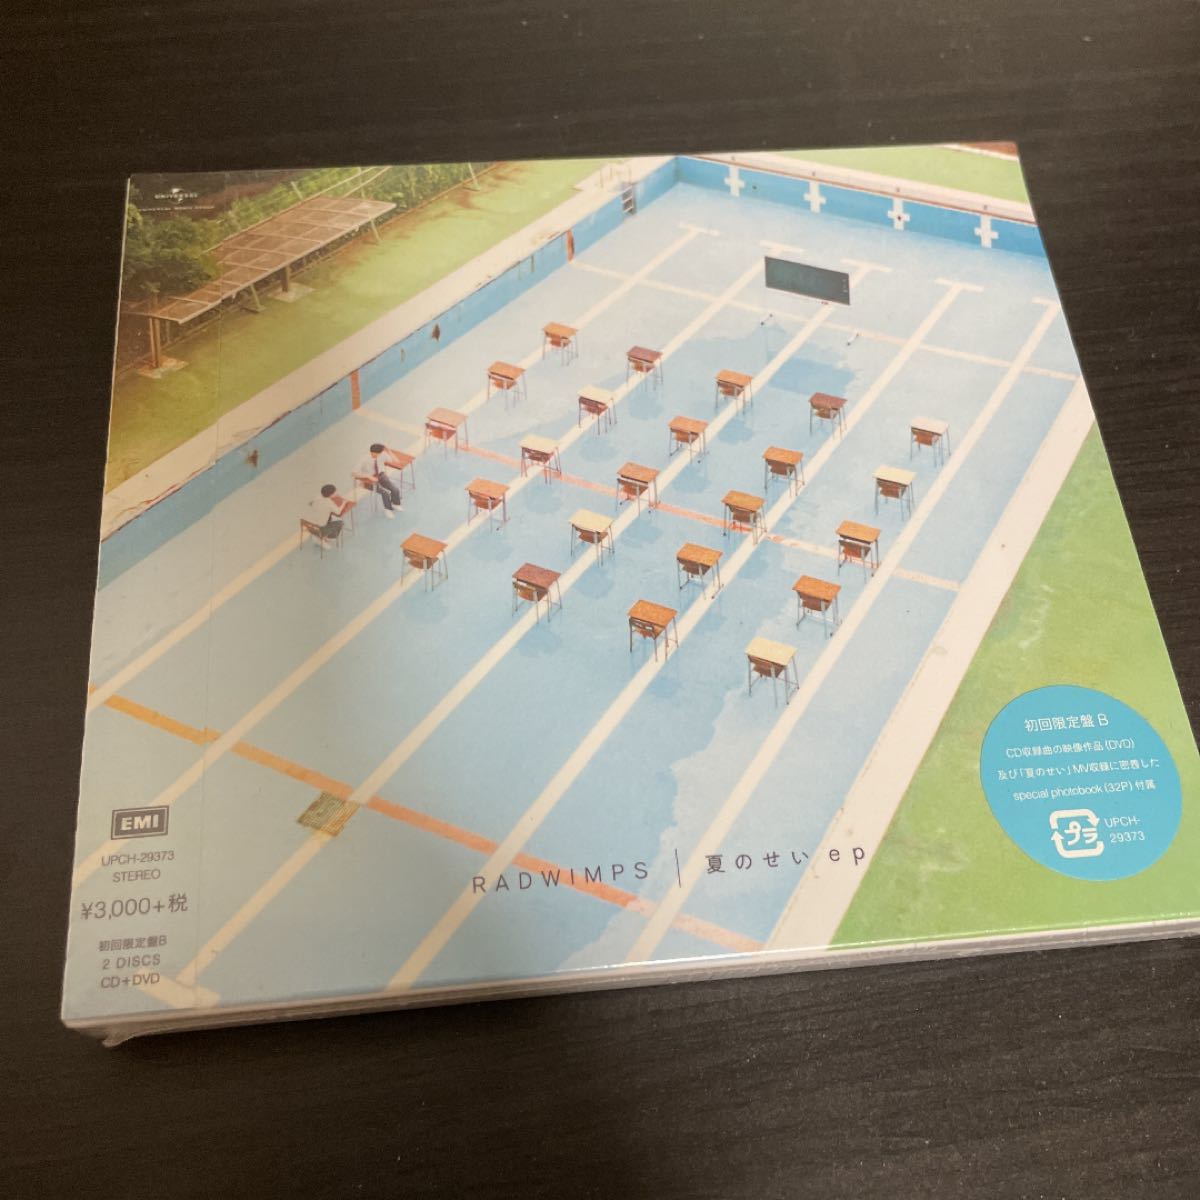 初回限定盤 (DVD) (取) RADWIMPS CD+DVD/夏のせい ep 20/9/2発売 オリコン加盟店